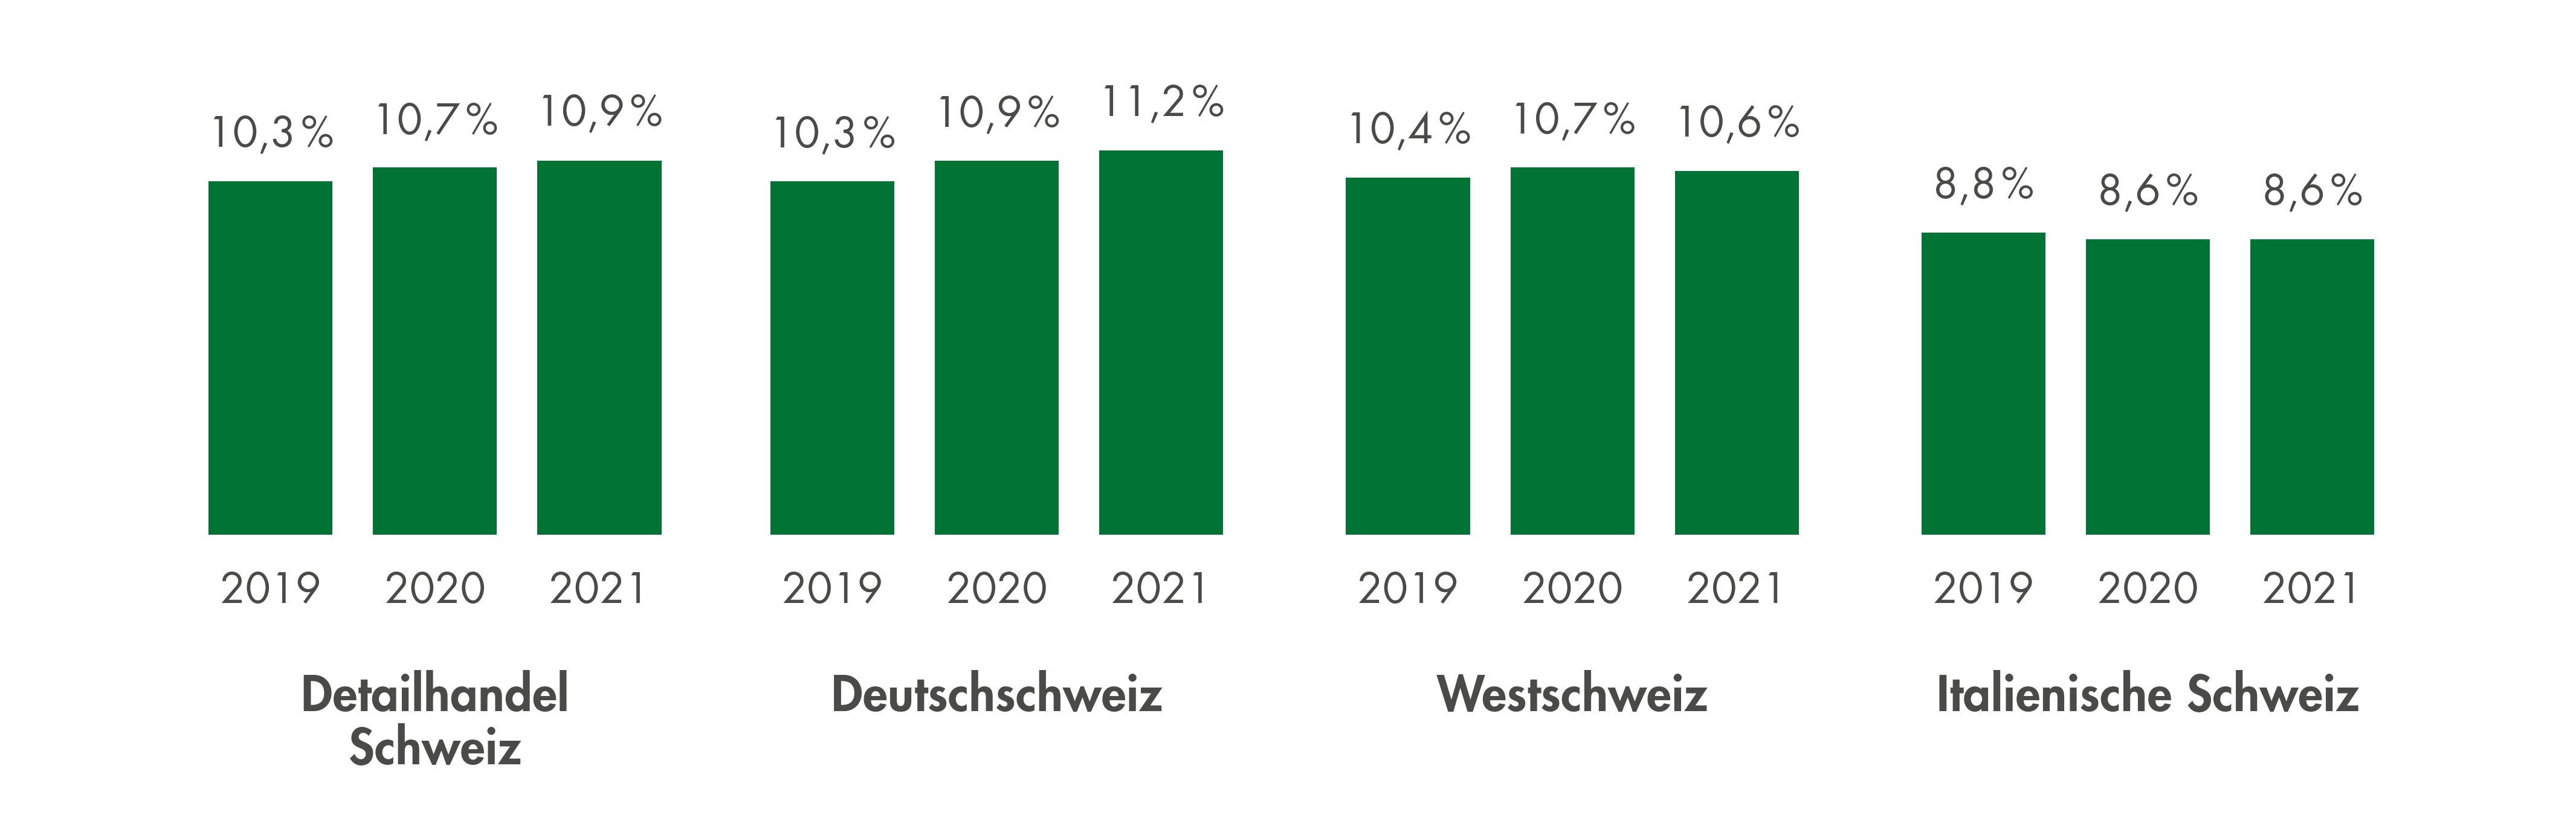 Bio Anteile nach Regionen in der Schweiz, 2020 